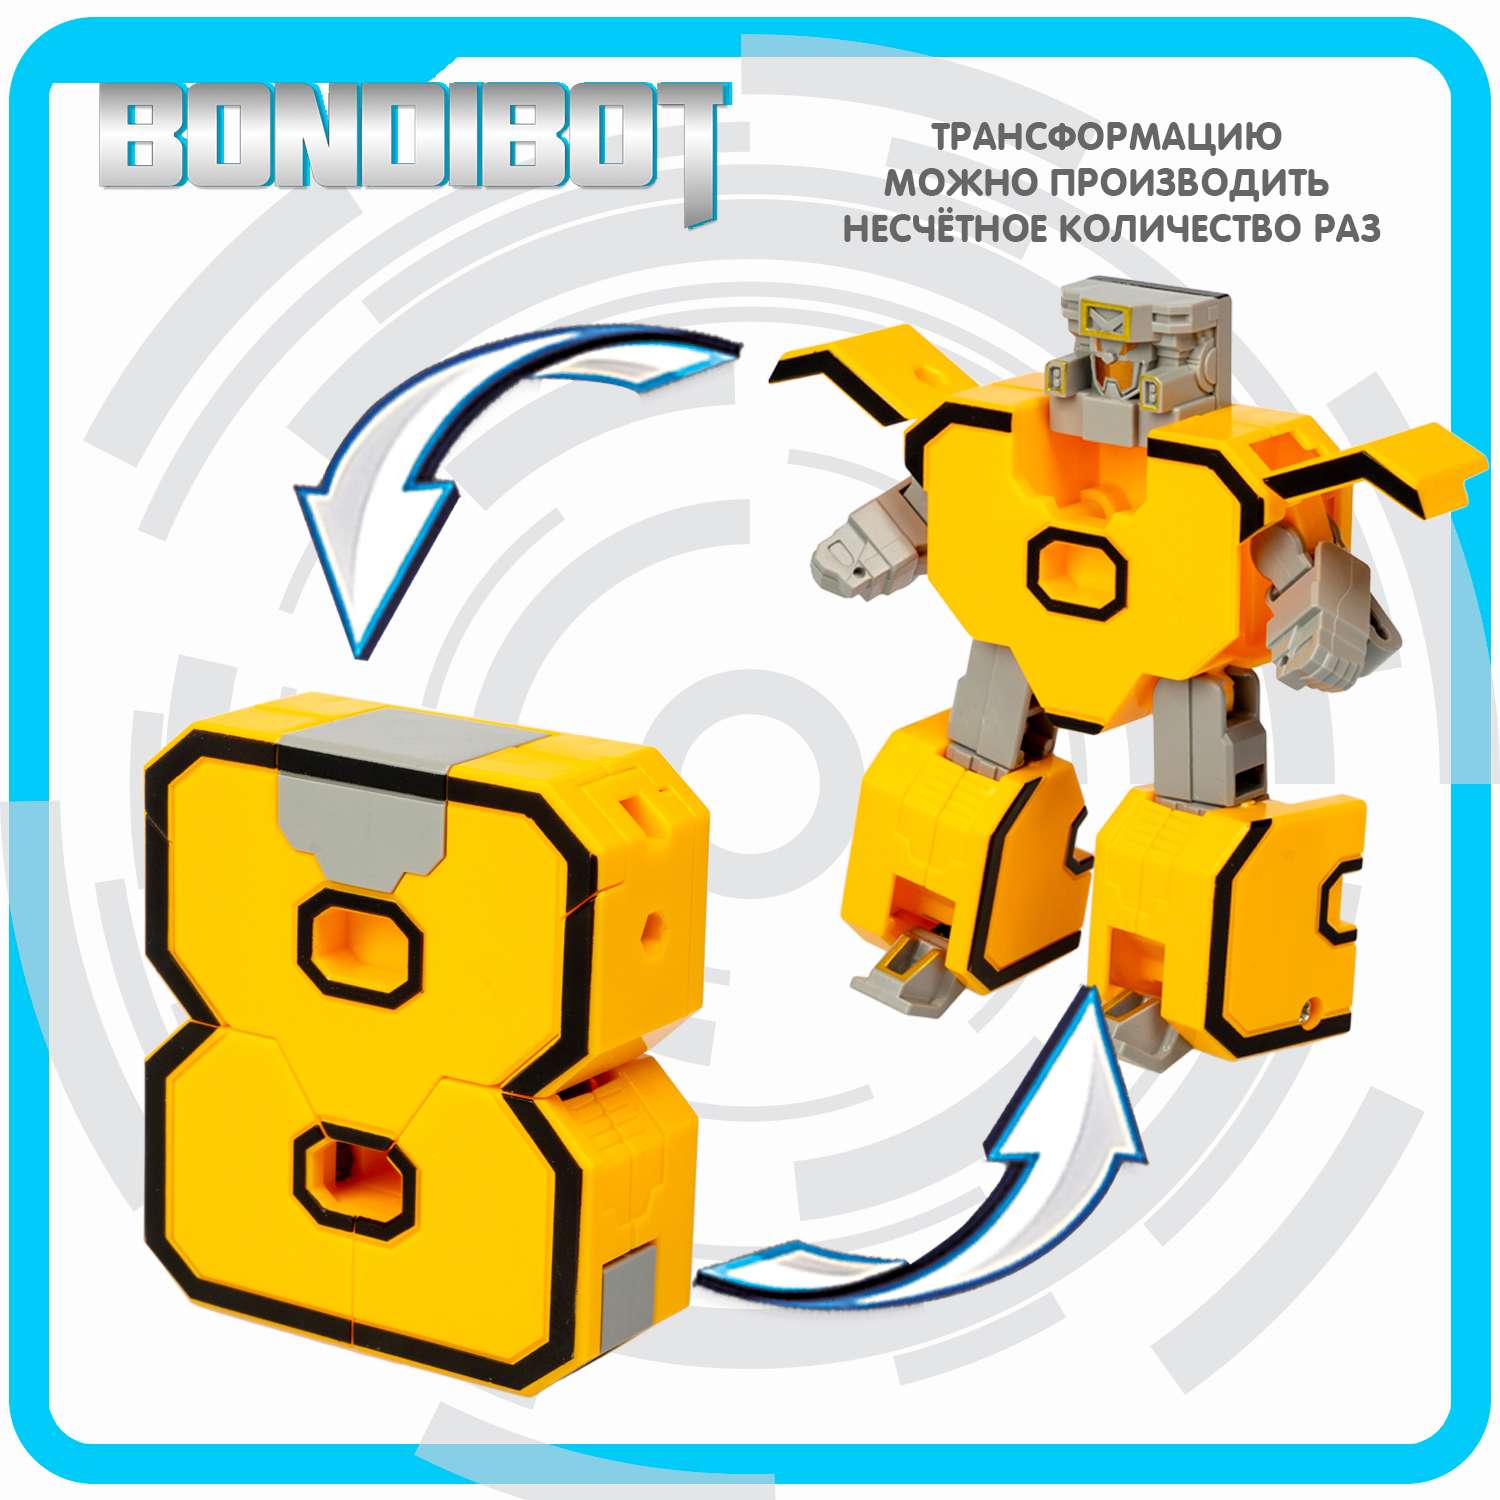 Трансформер BONDIBON bondibot 2 в 1 Цифровой переворот робот-цифра 8 жёлтого цвета в голубом боксе - фото 7